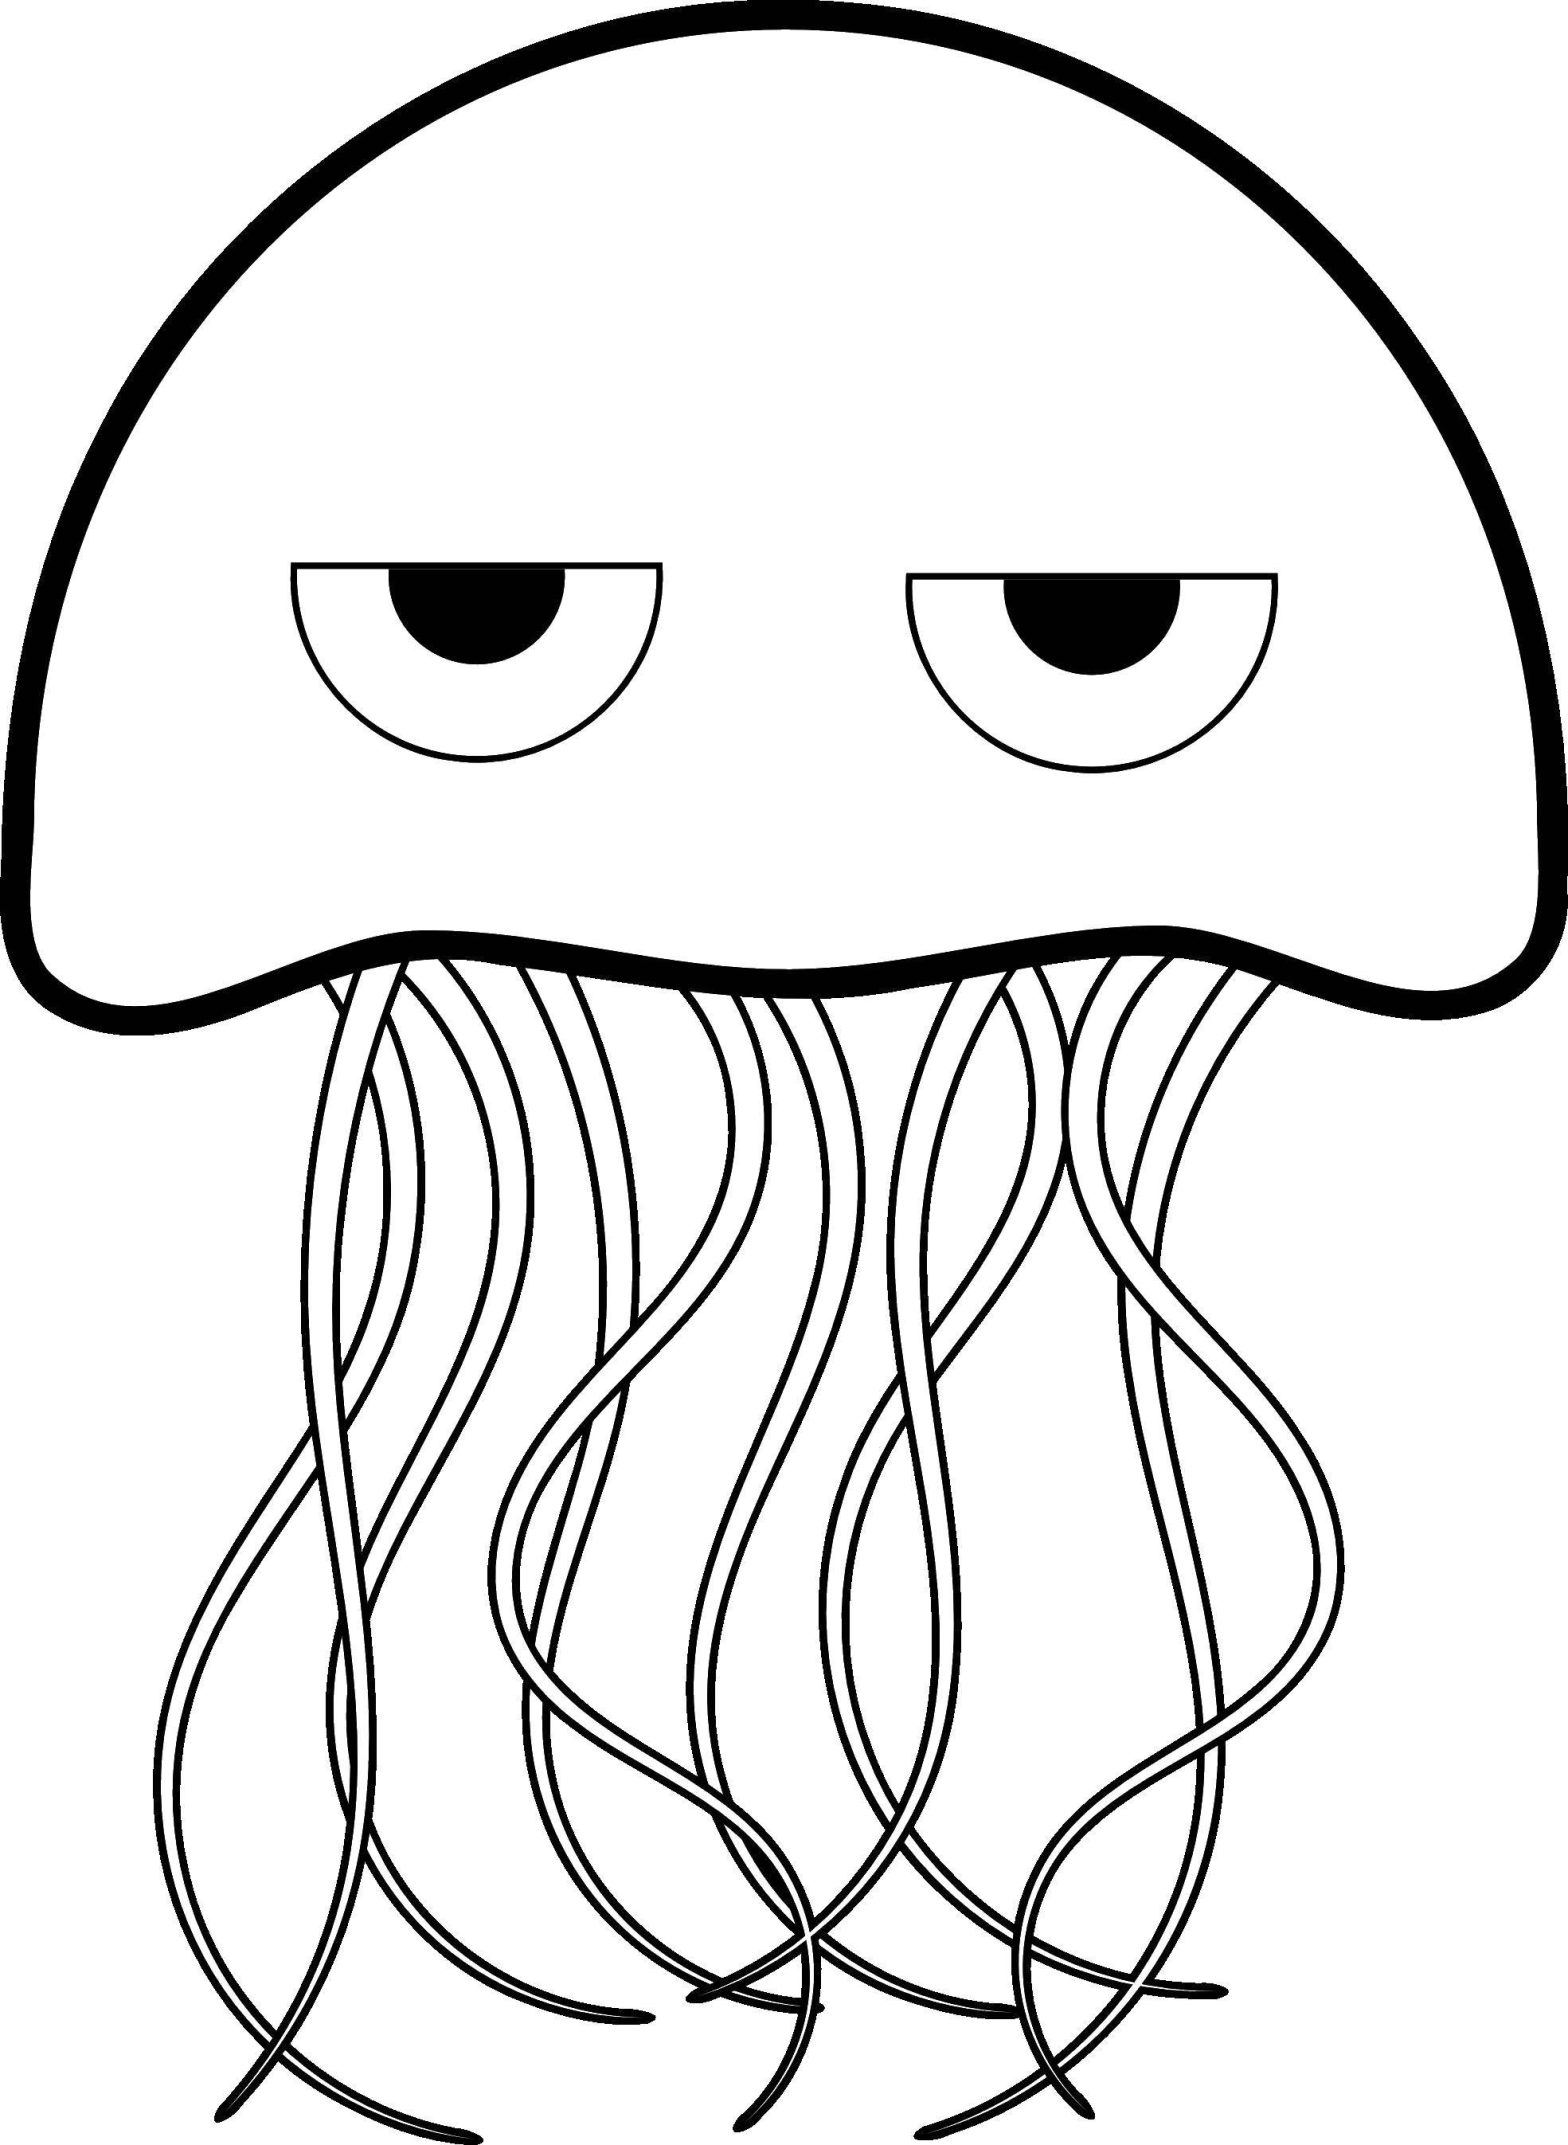 Раскраска медуза для детей: подводный мир на листе бумаги (медуза)